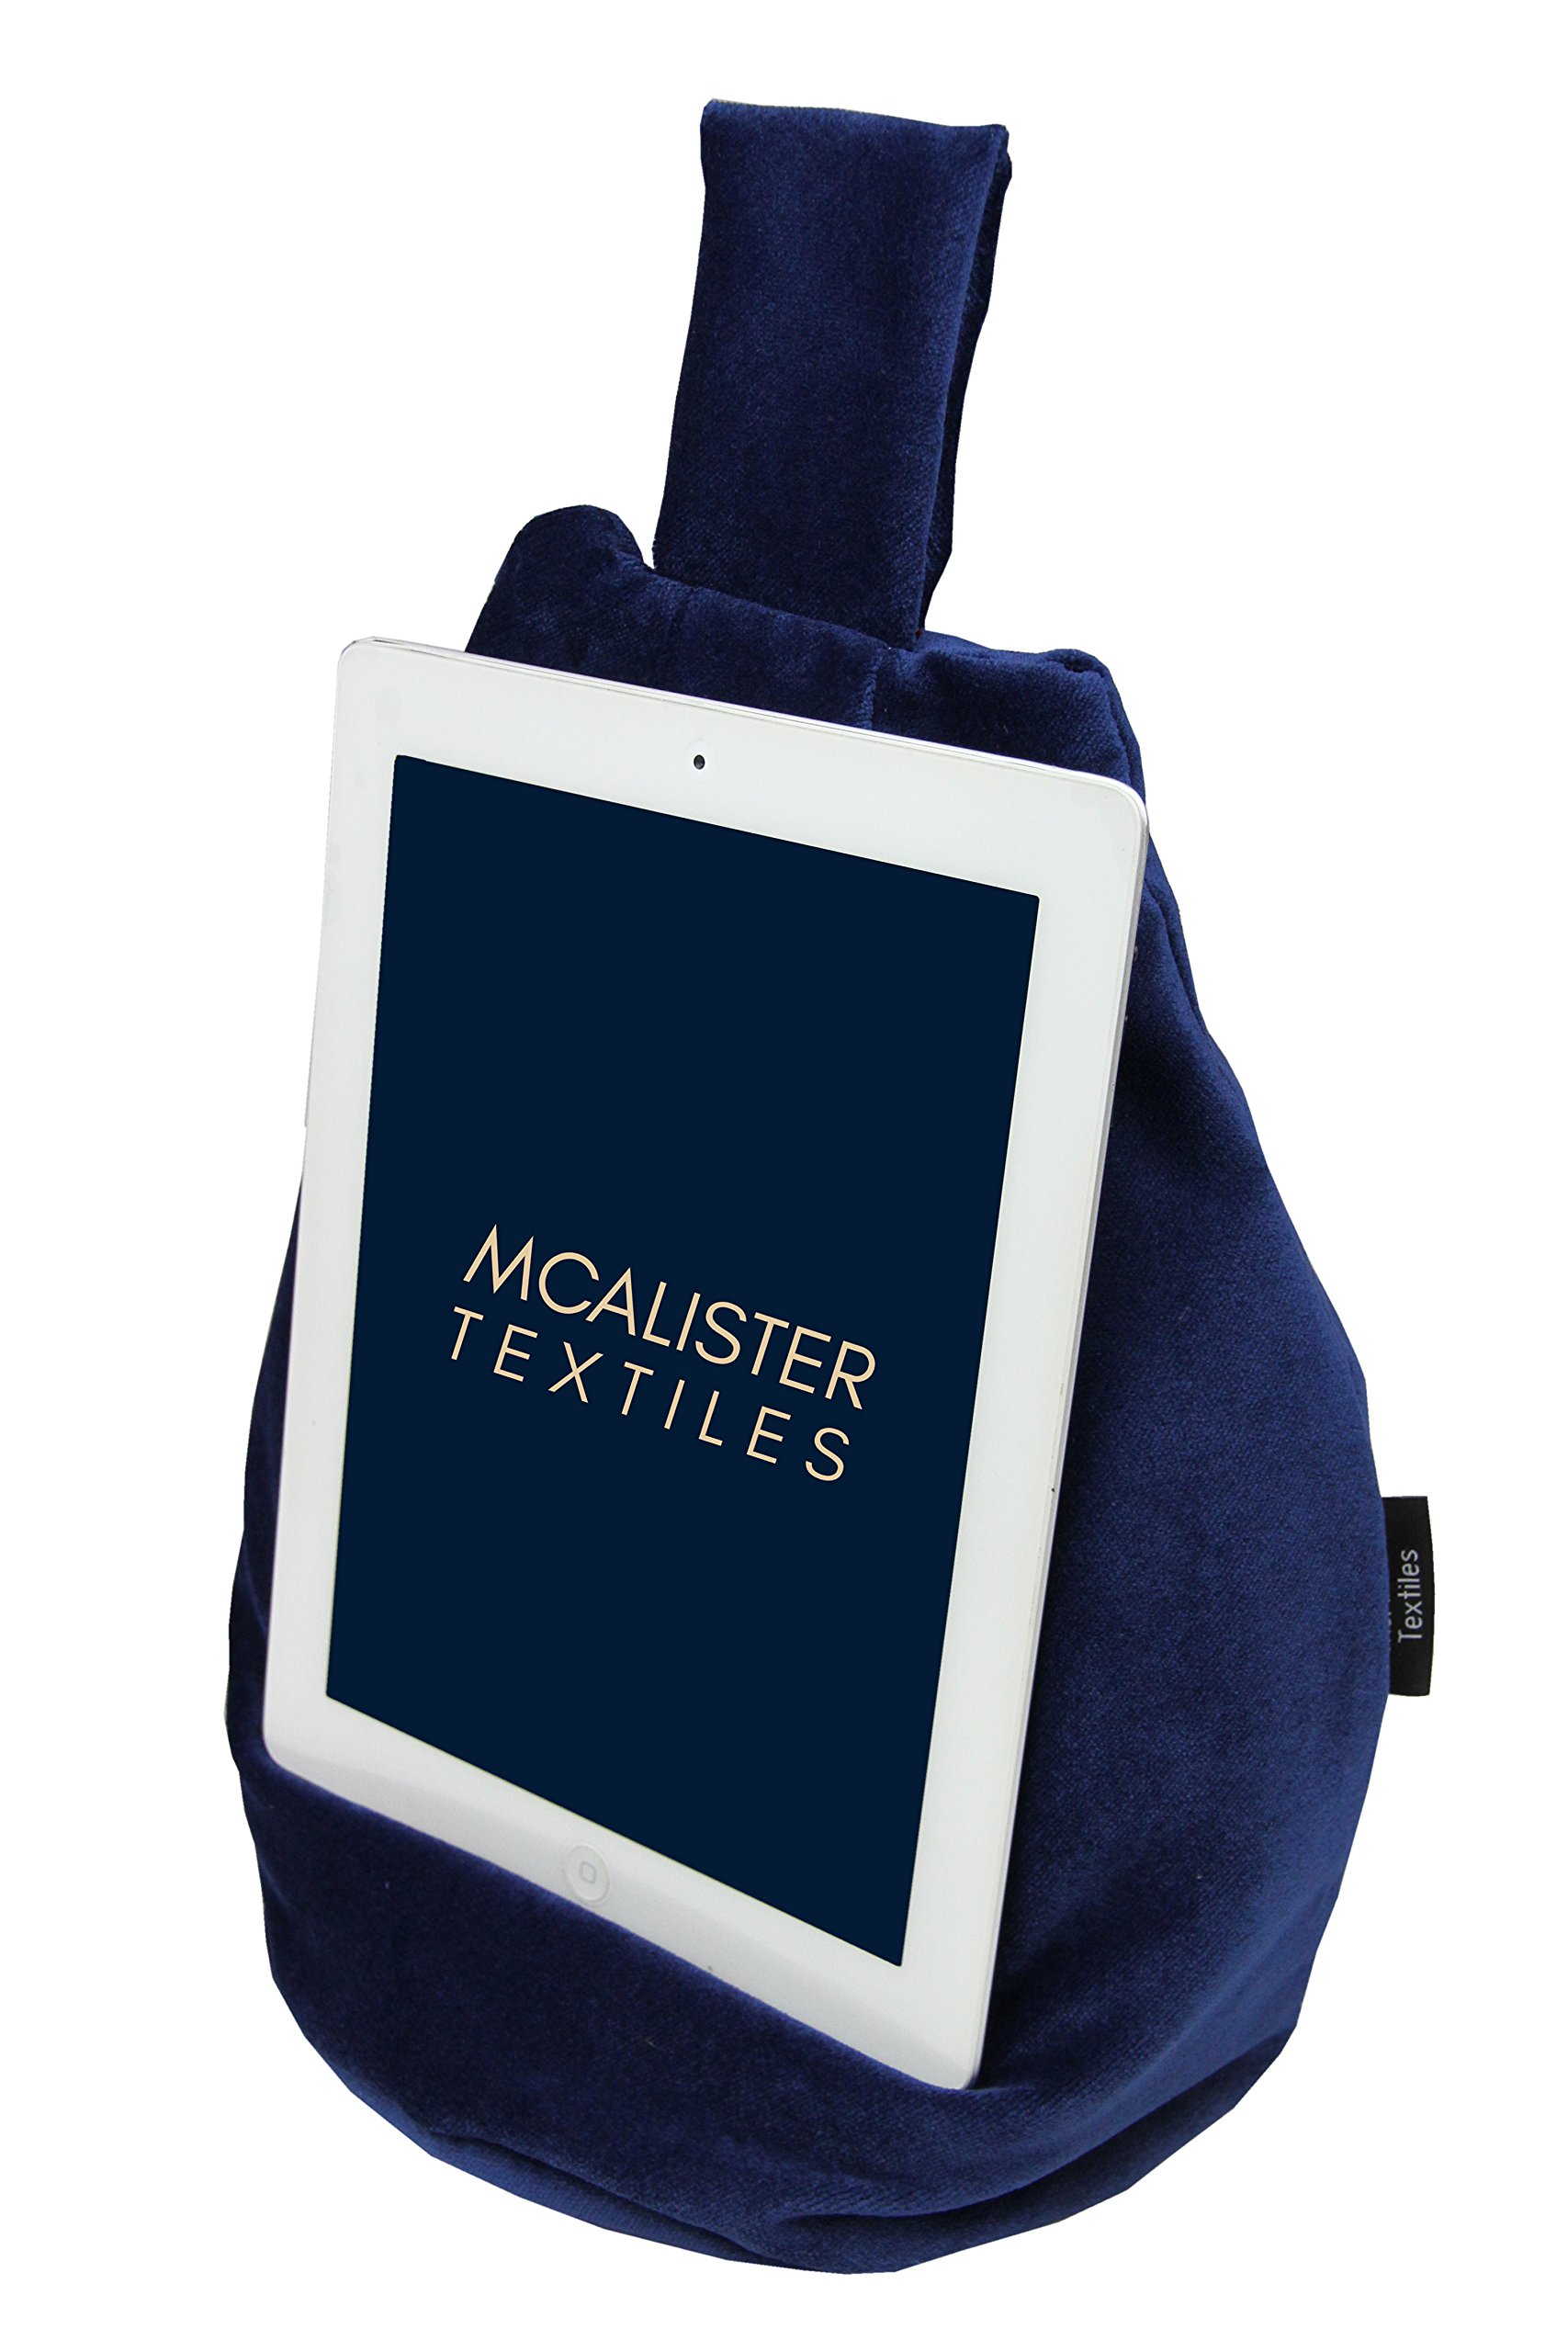 McAlister Textiles Matter Samt | Mini Bean Bag | praktisches Bücherkissen in Marineblau | Ständer für Buch, Tablet, Handy, eBook Reader